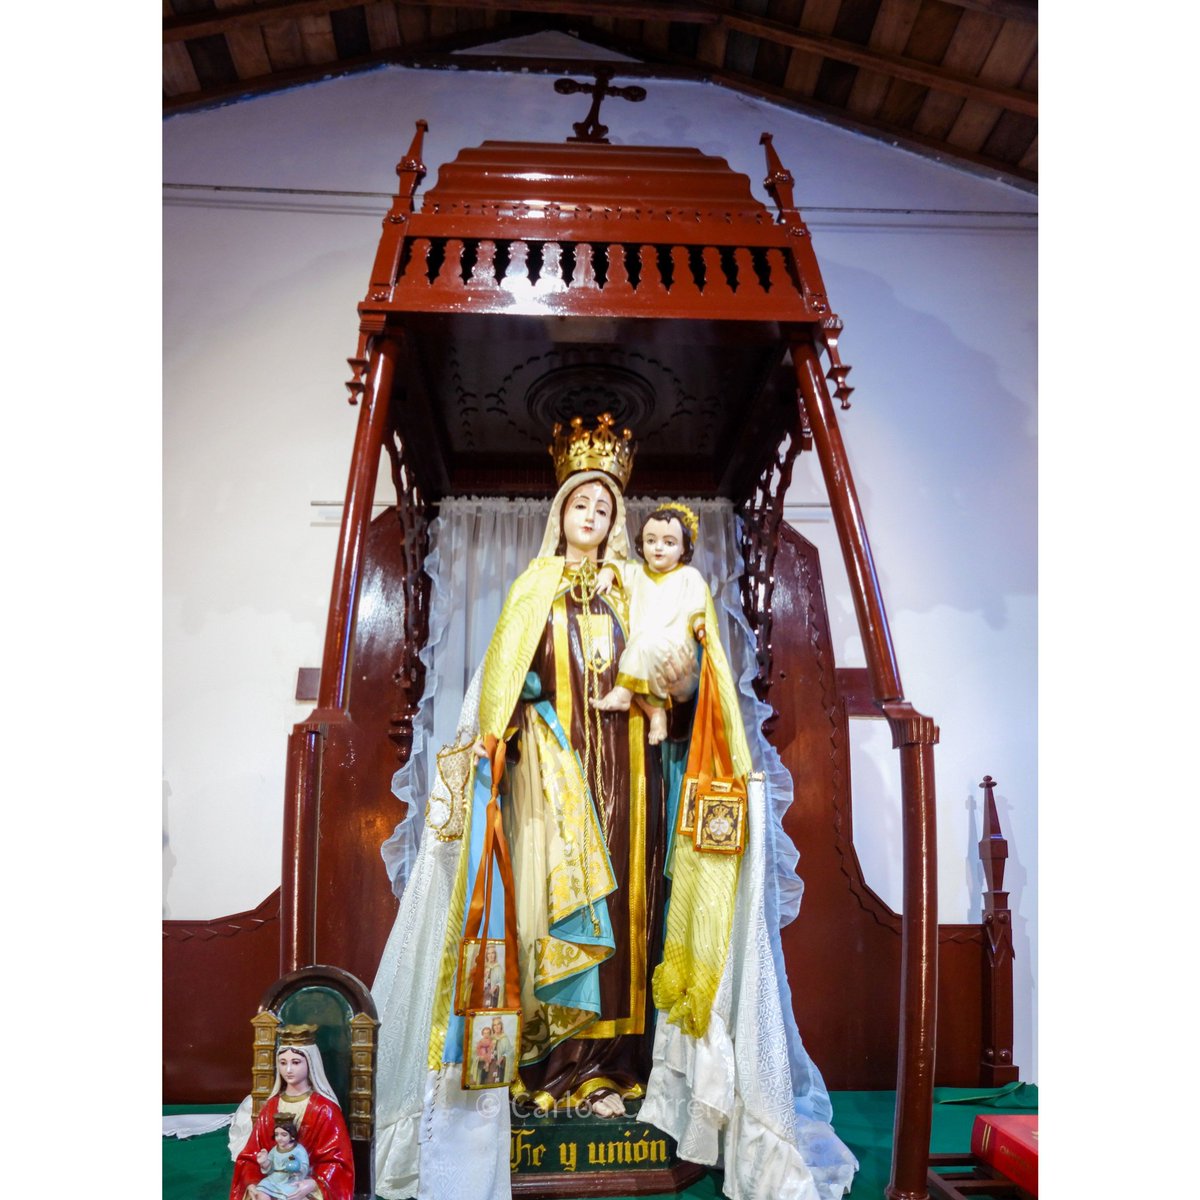 Imagen de la virgen María bajo la Advocacion de Nuestra Señora del Carmen . Año 1937 #Maracay estado #aragua #venezuela #arte #iglesia #templo #photo